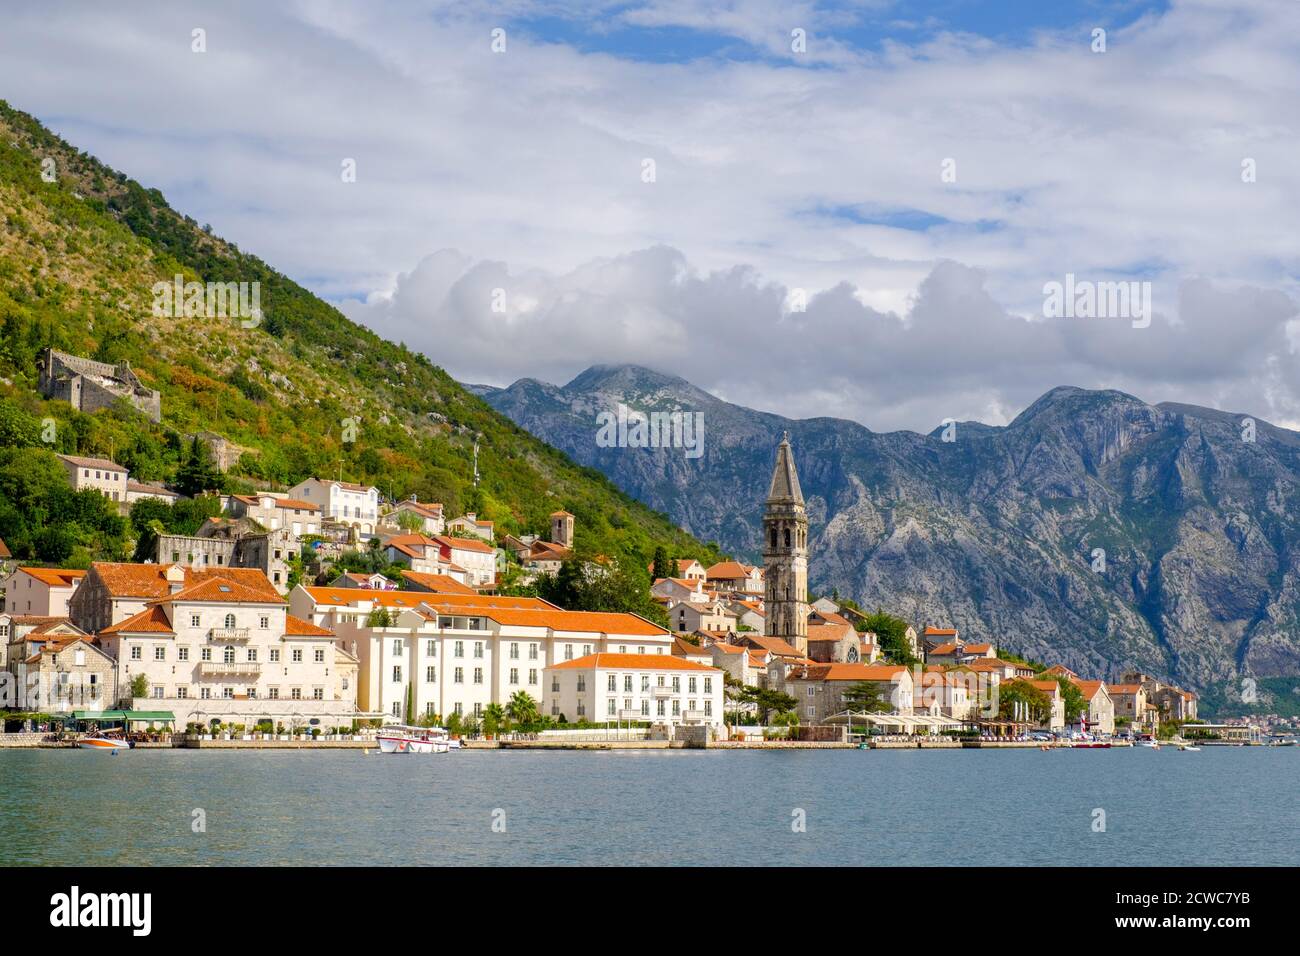 Perast old town, Bay of Kotor, Montenegro. Stock Photo